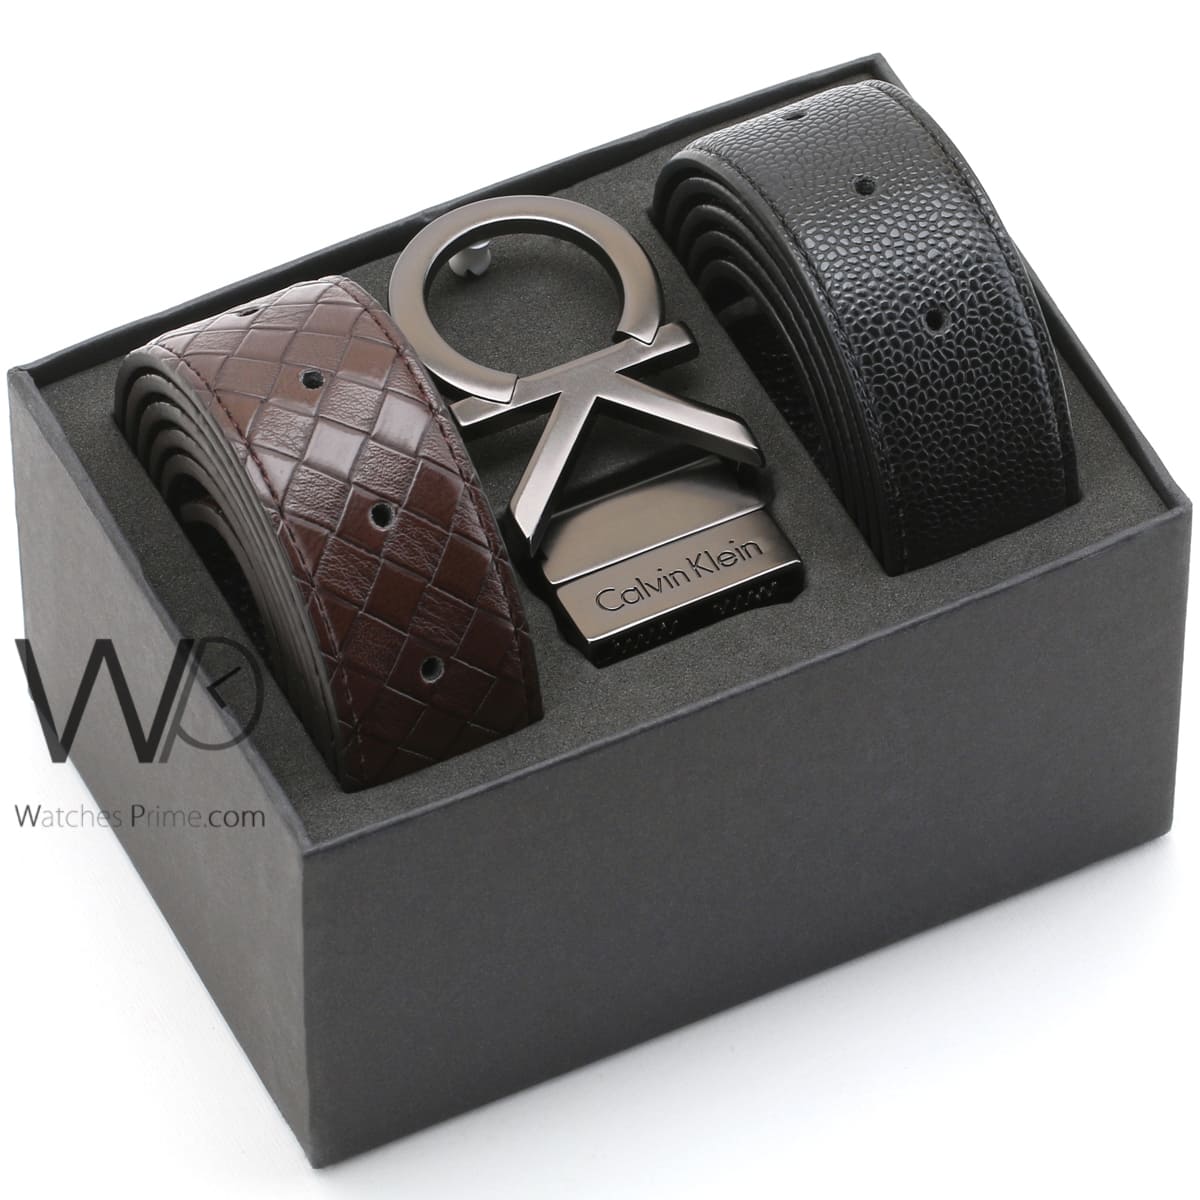 Calvin Klein CK black brown leather belt | Watches Prime